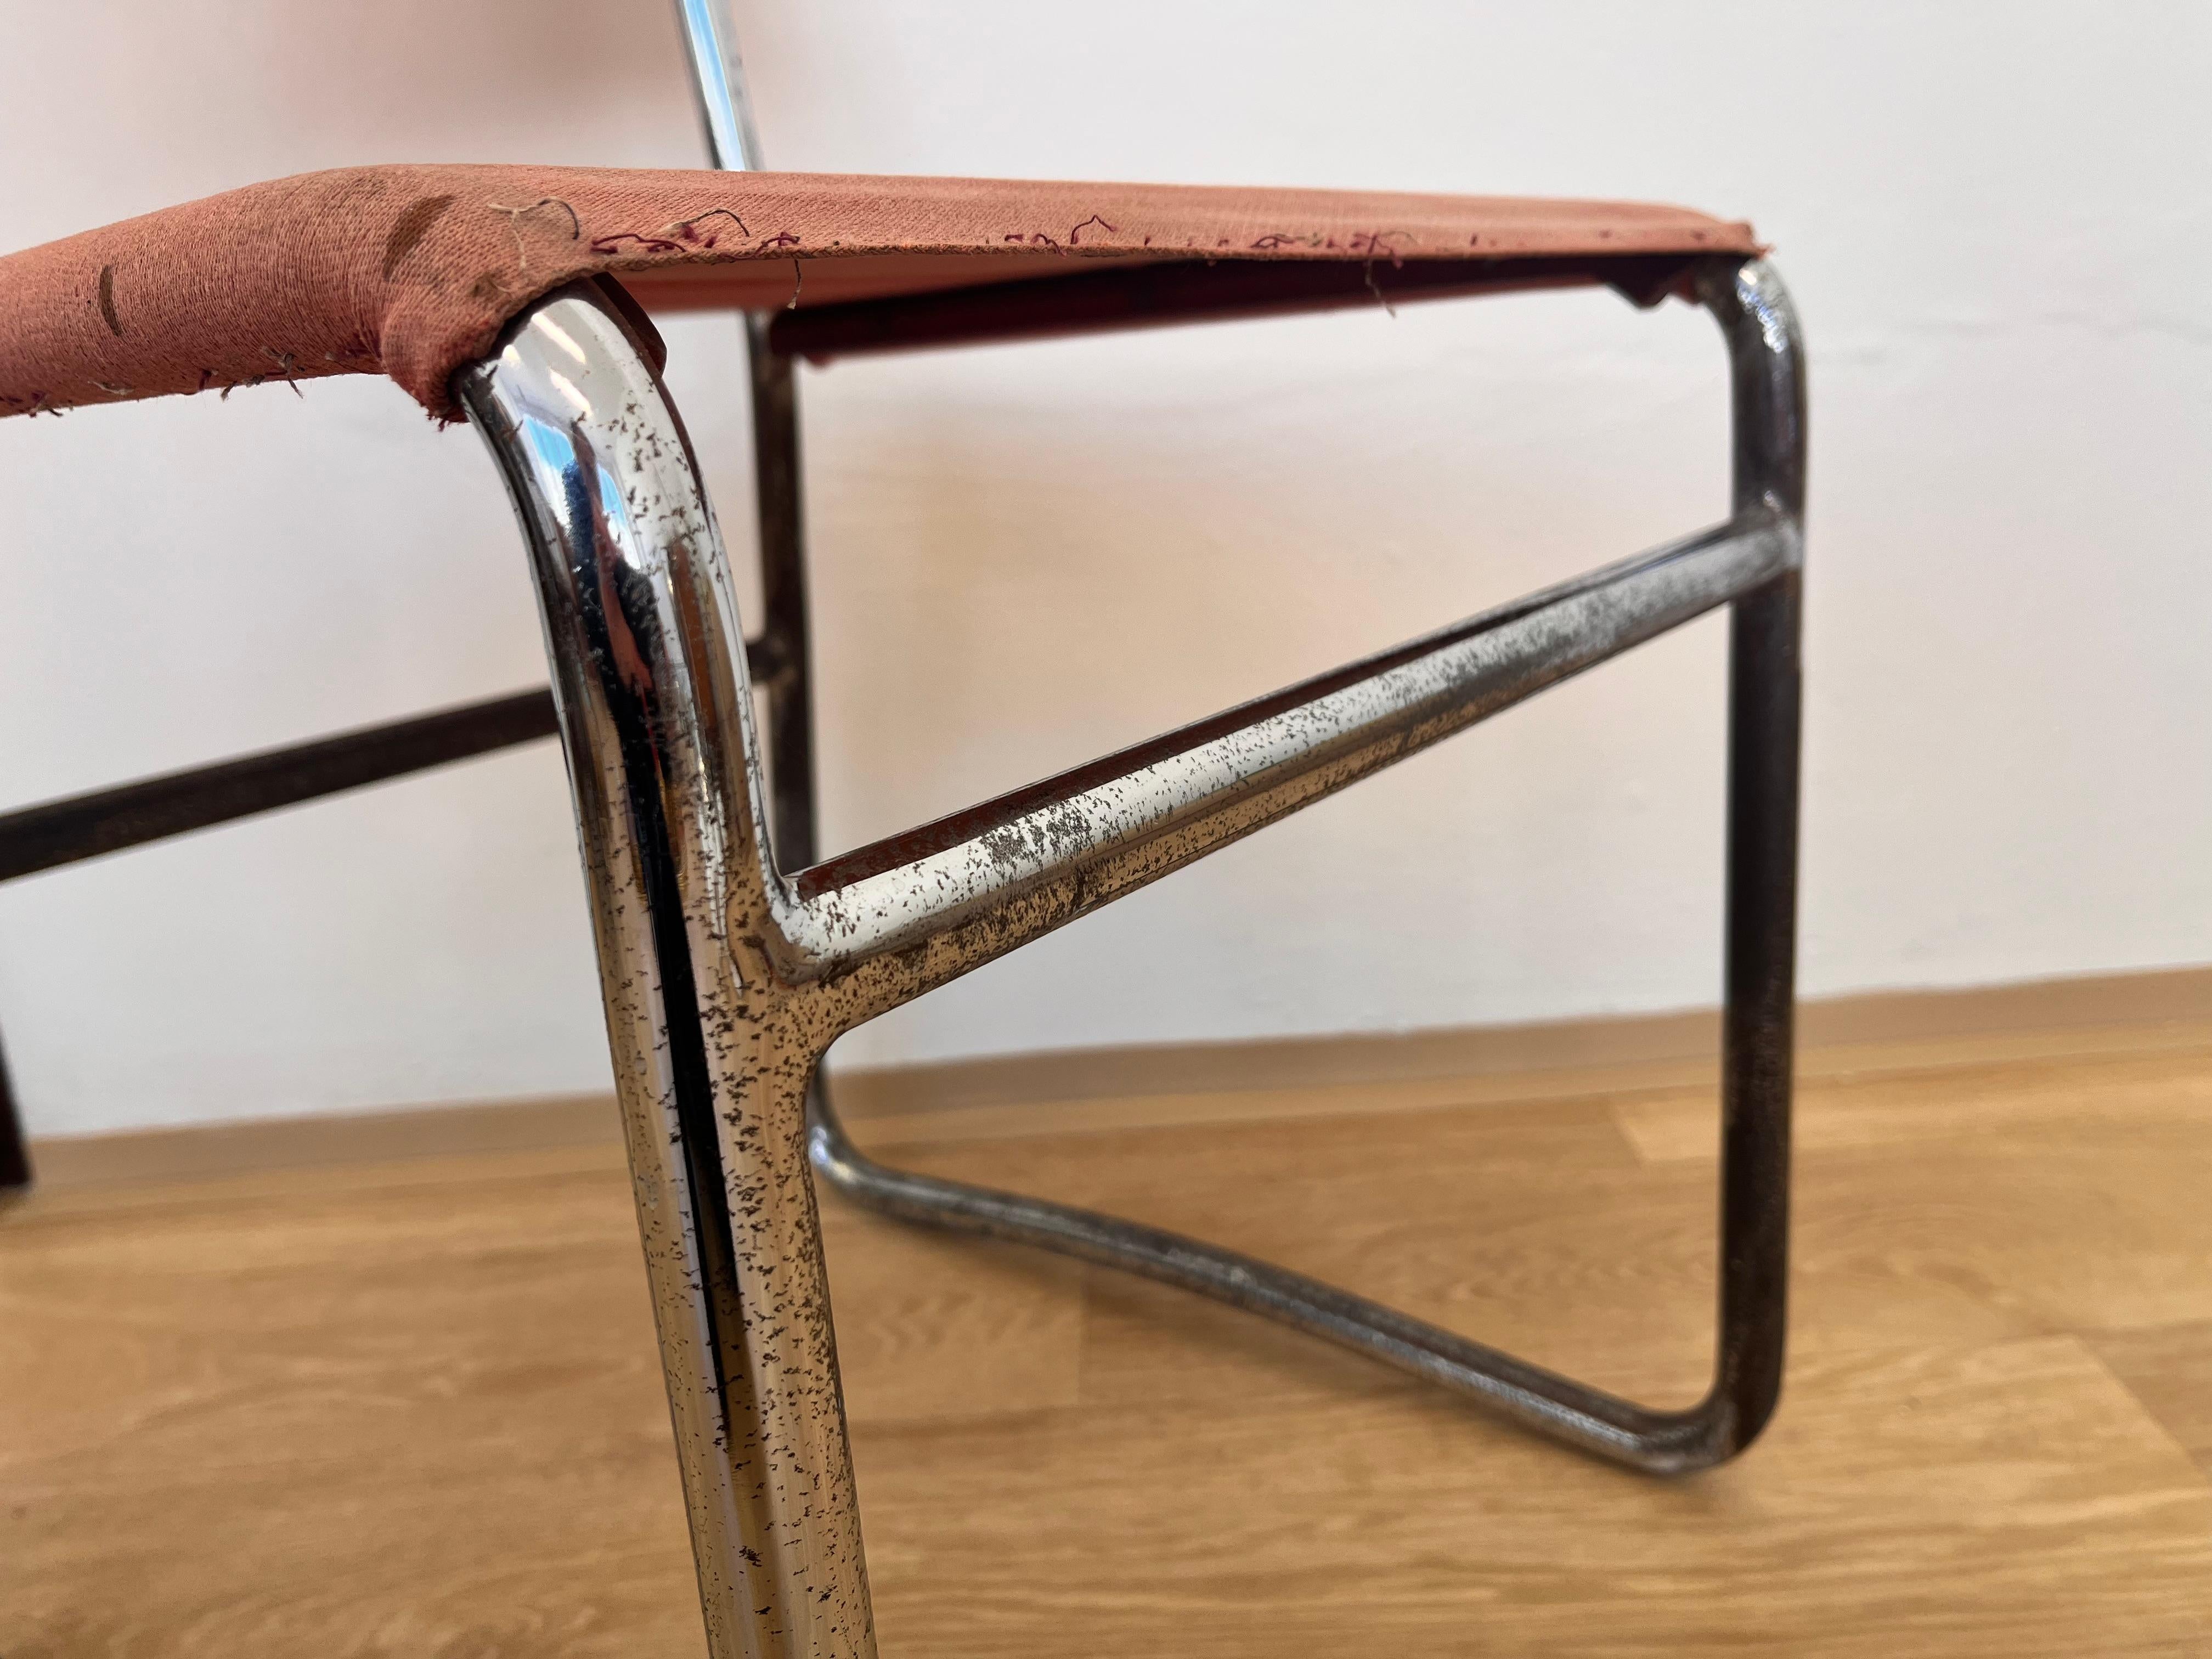 Czech Tubular Steel Chrome Bauhaus Chair by Hynek Gottwald - 1930 (Eisengarn) For Sale